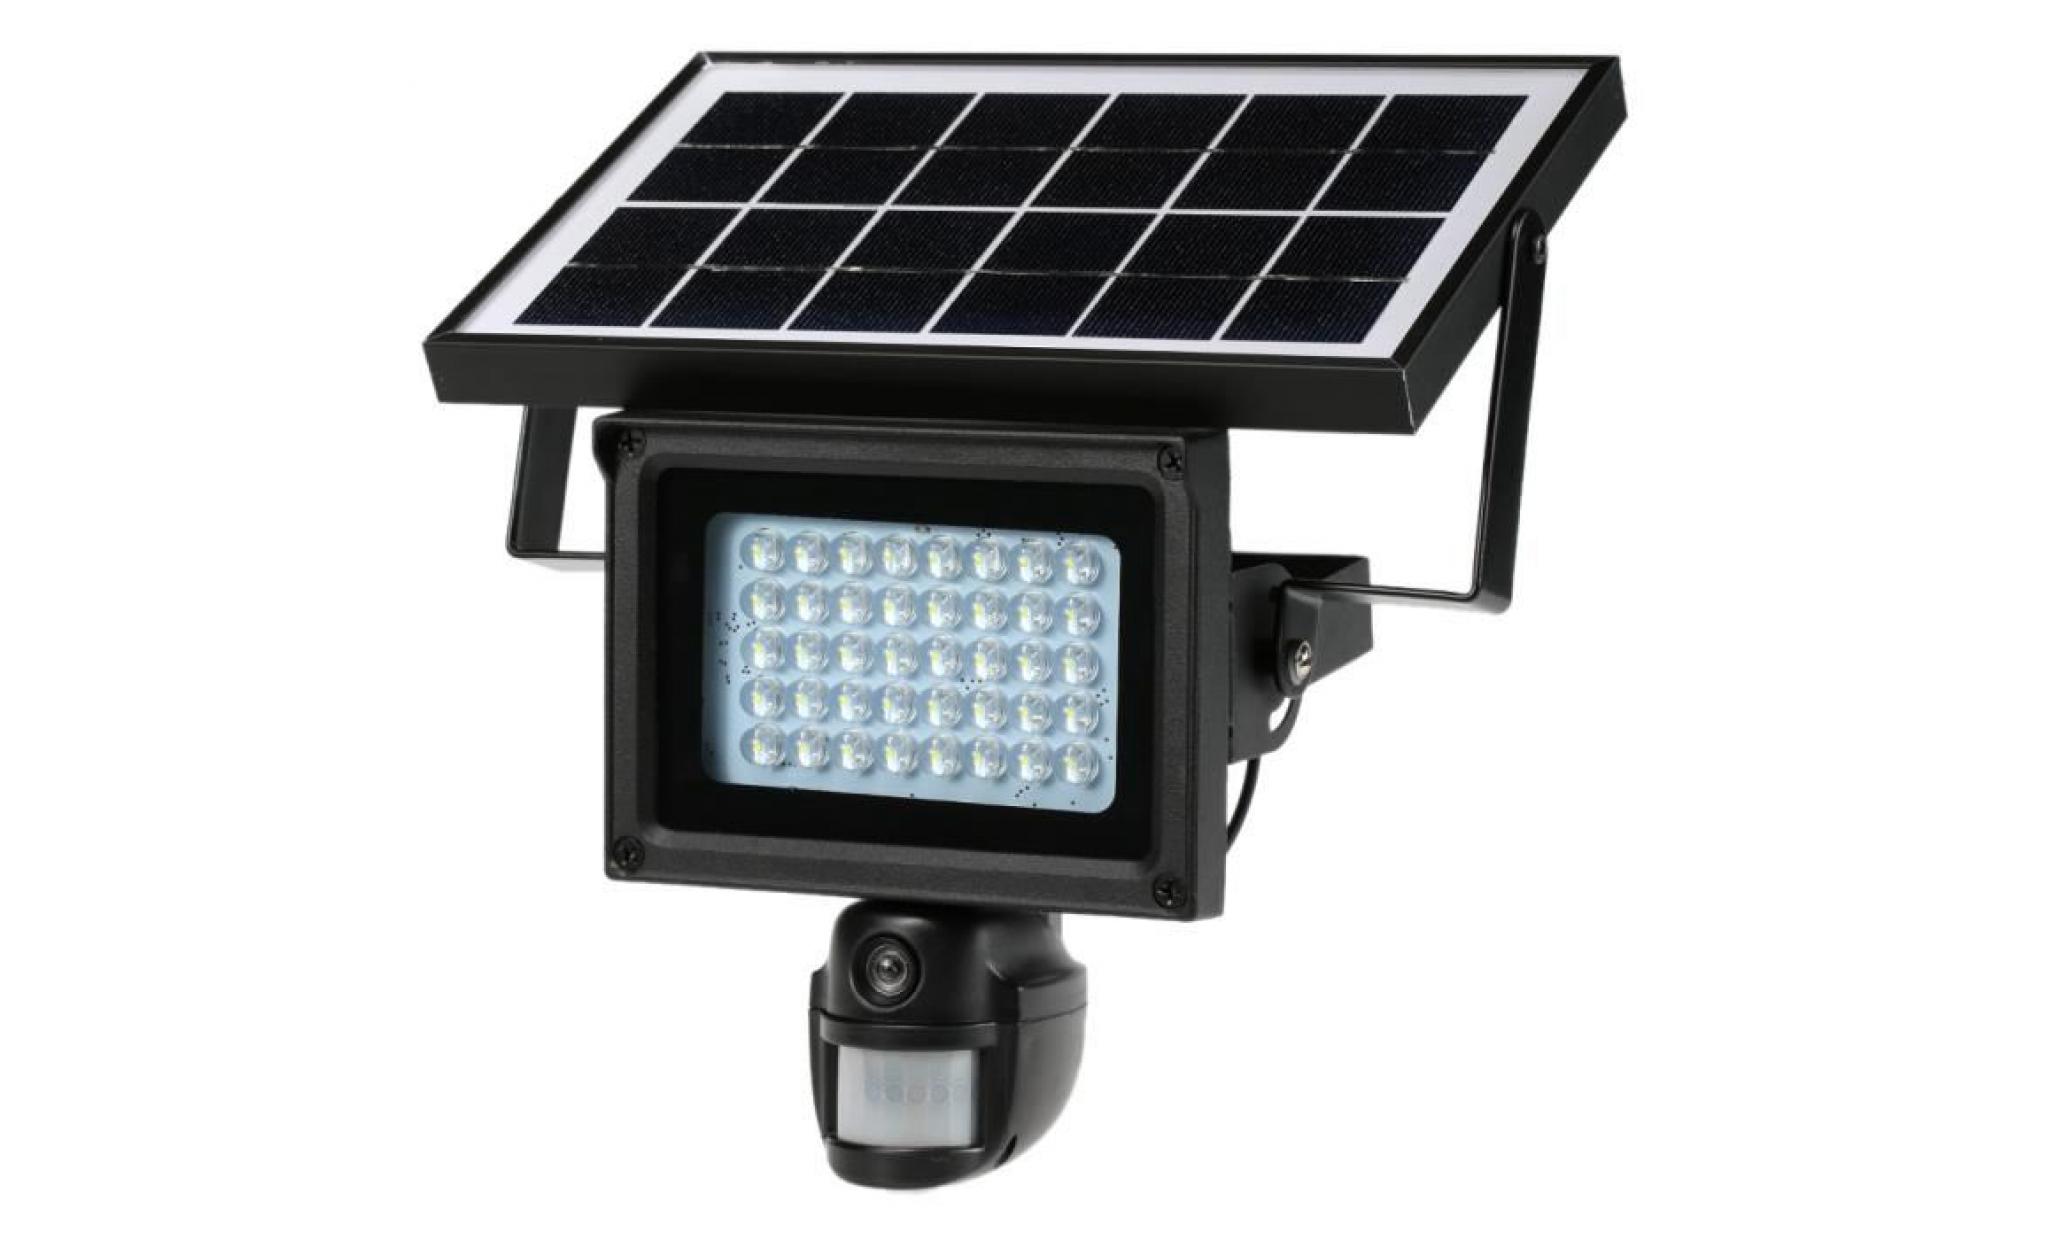 40 ir leds projecteur solaire lampe de rue 720p hd cctv caméra de sécurité enregistreur dvr détection de mouvement pir charge